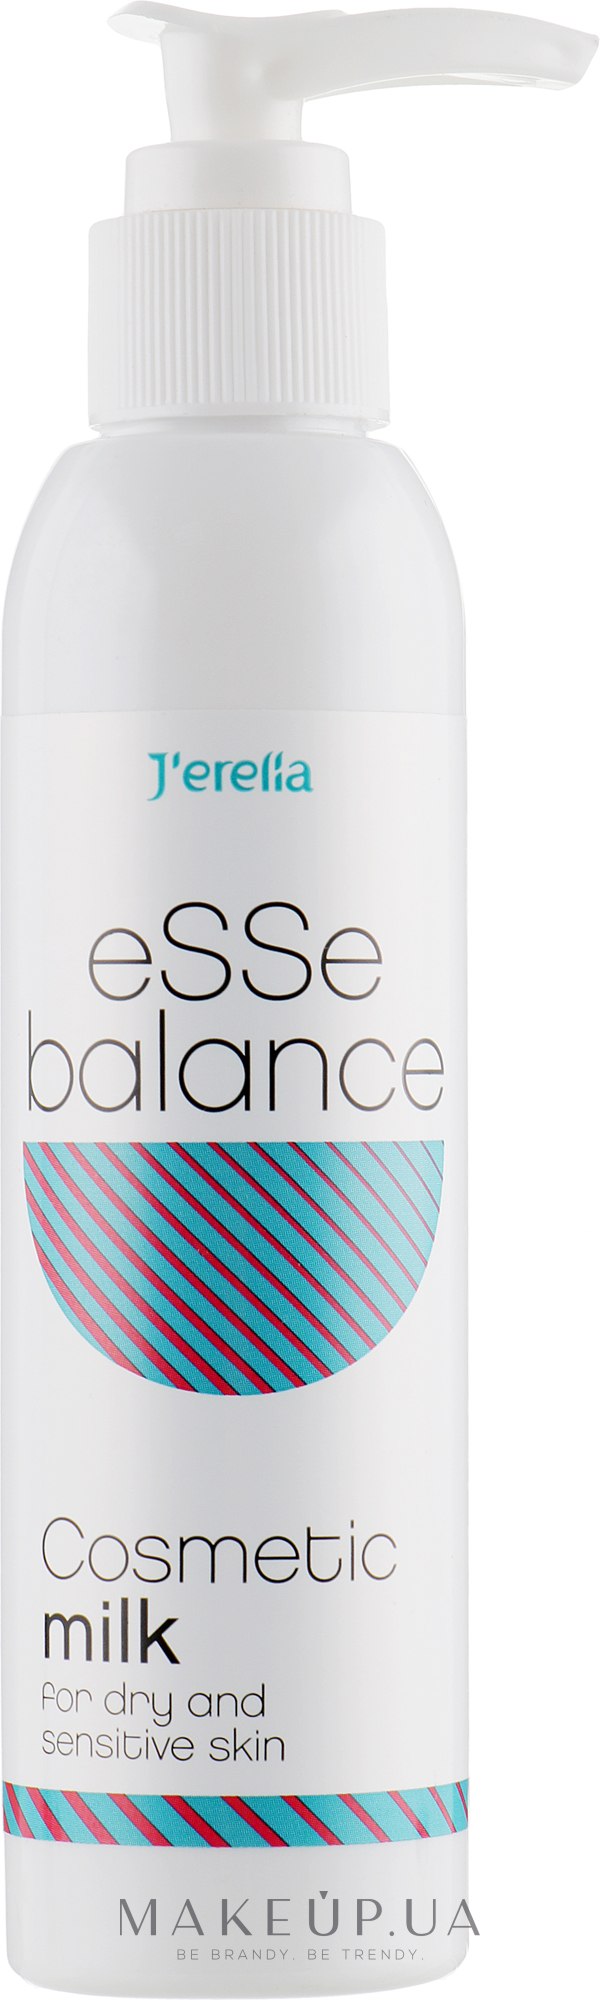 Косметическое молочко для сухой и чувствительной кожи - J'erelia Esse Balance  — фото 150ml